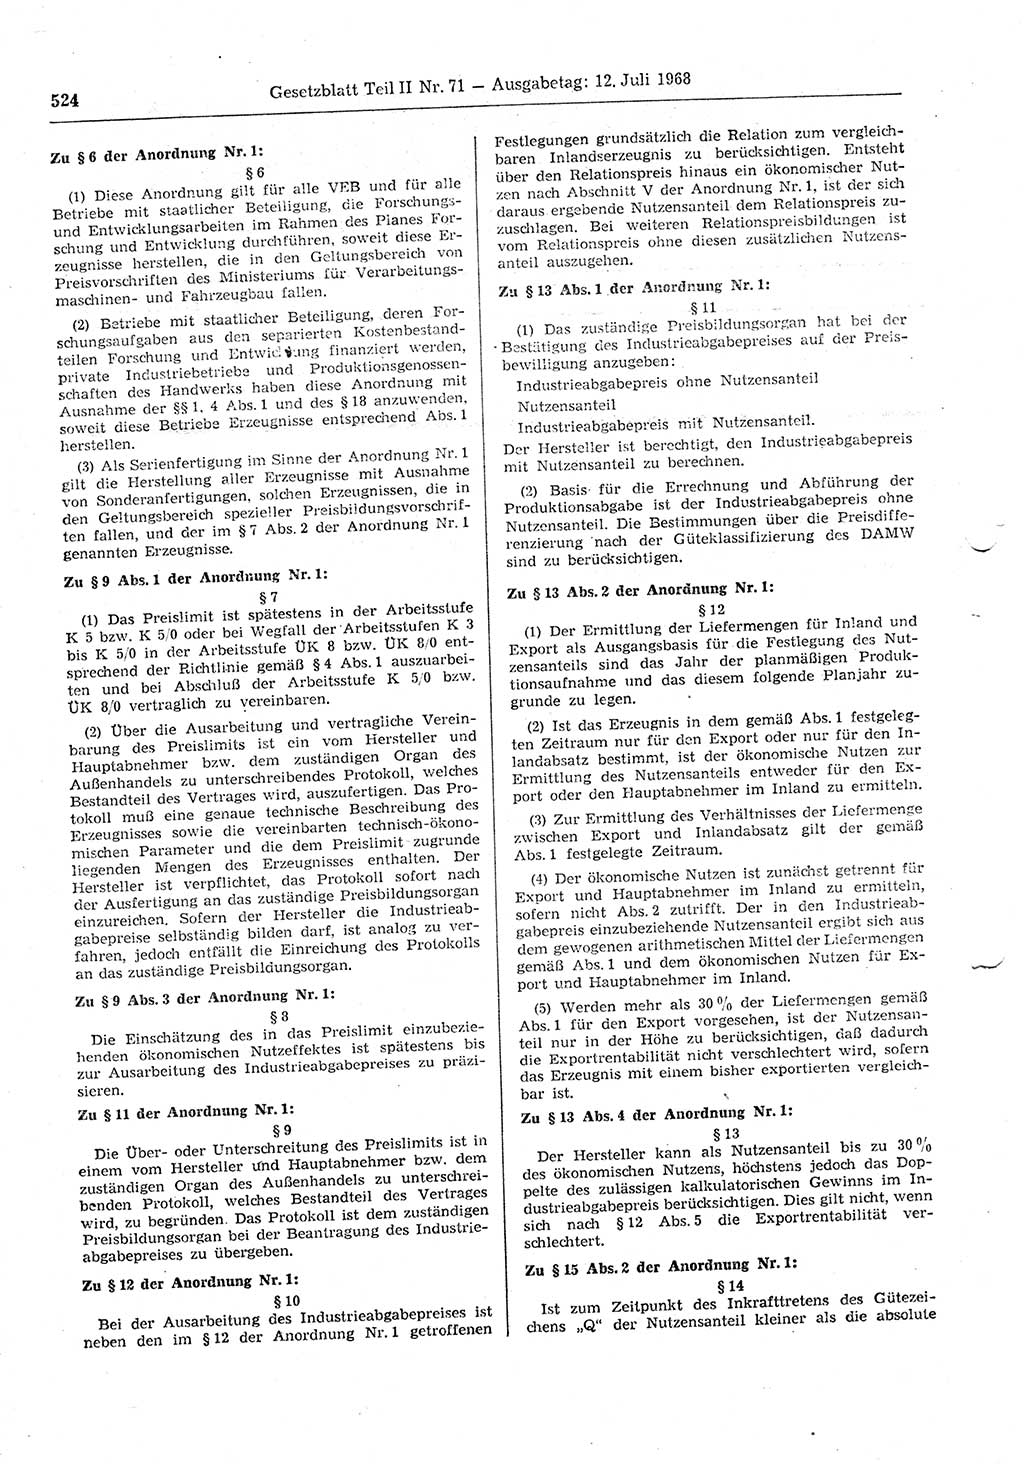 Gesetzblatt (GBl.) der Deutschen Demokratischen Republik (DDR) Teil ⅠⅠ 1968, Seite 524 (GBl. DDR ⅠⅠ 1968, S. 524)